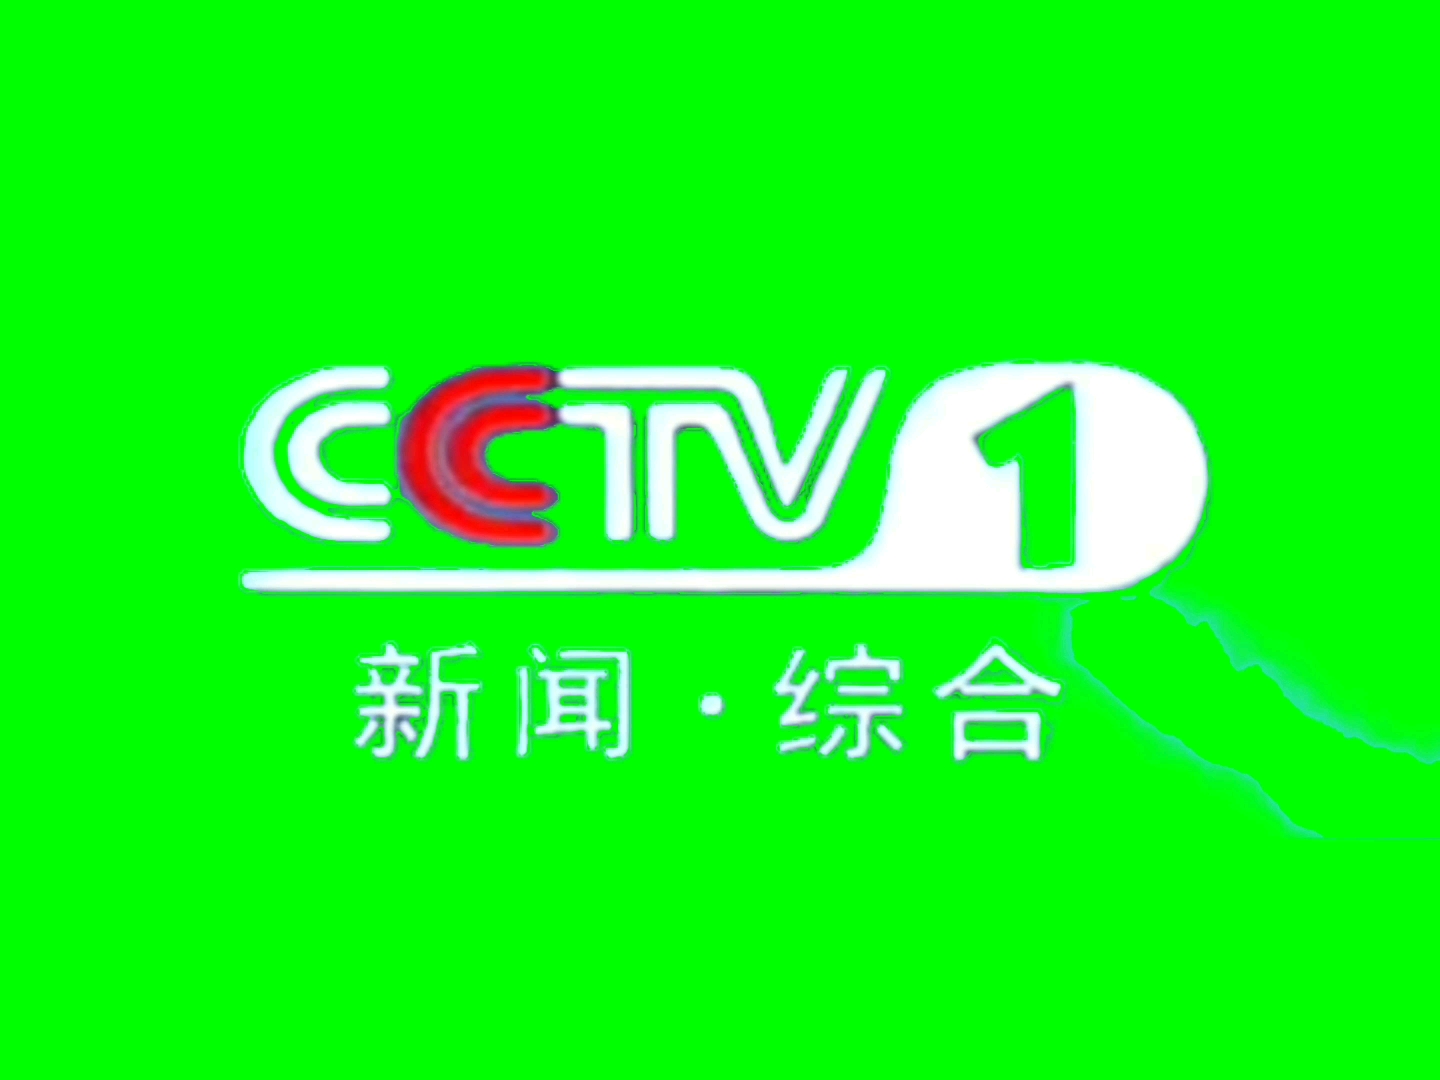 【绿幕素材】cctv新闻综合mlg绿幕素材合集【看简介】(持续更新,不懒